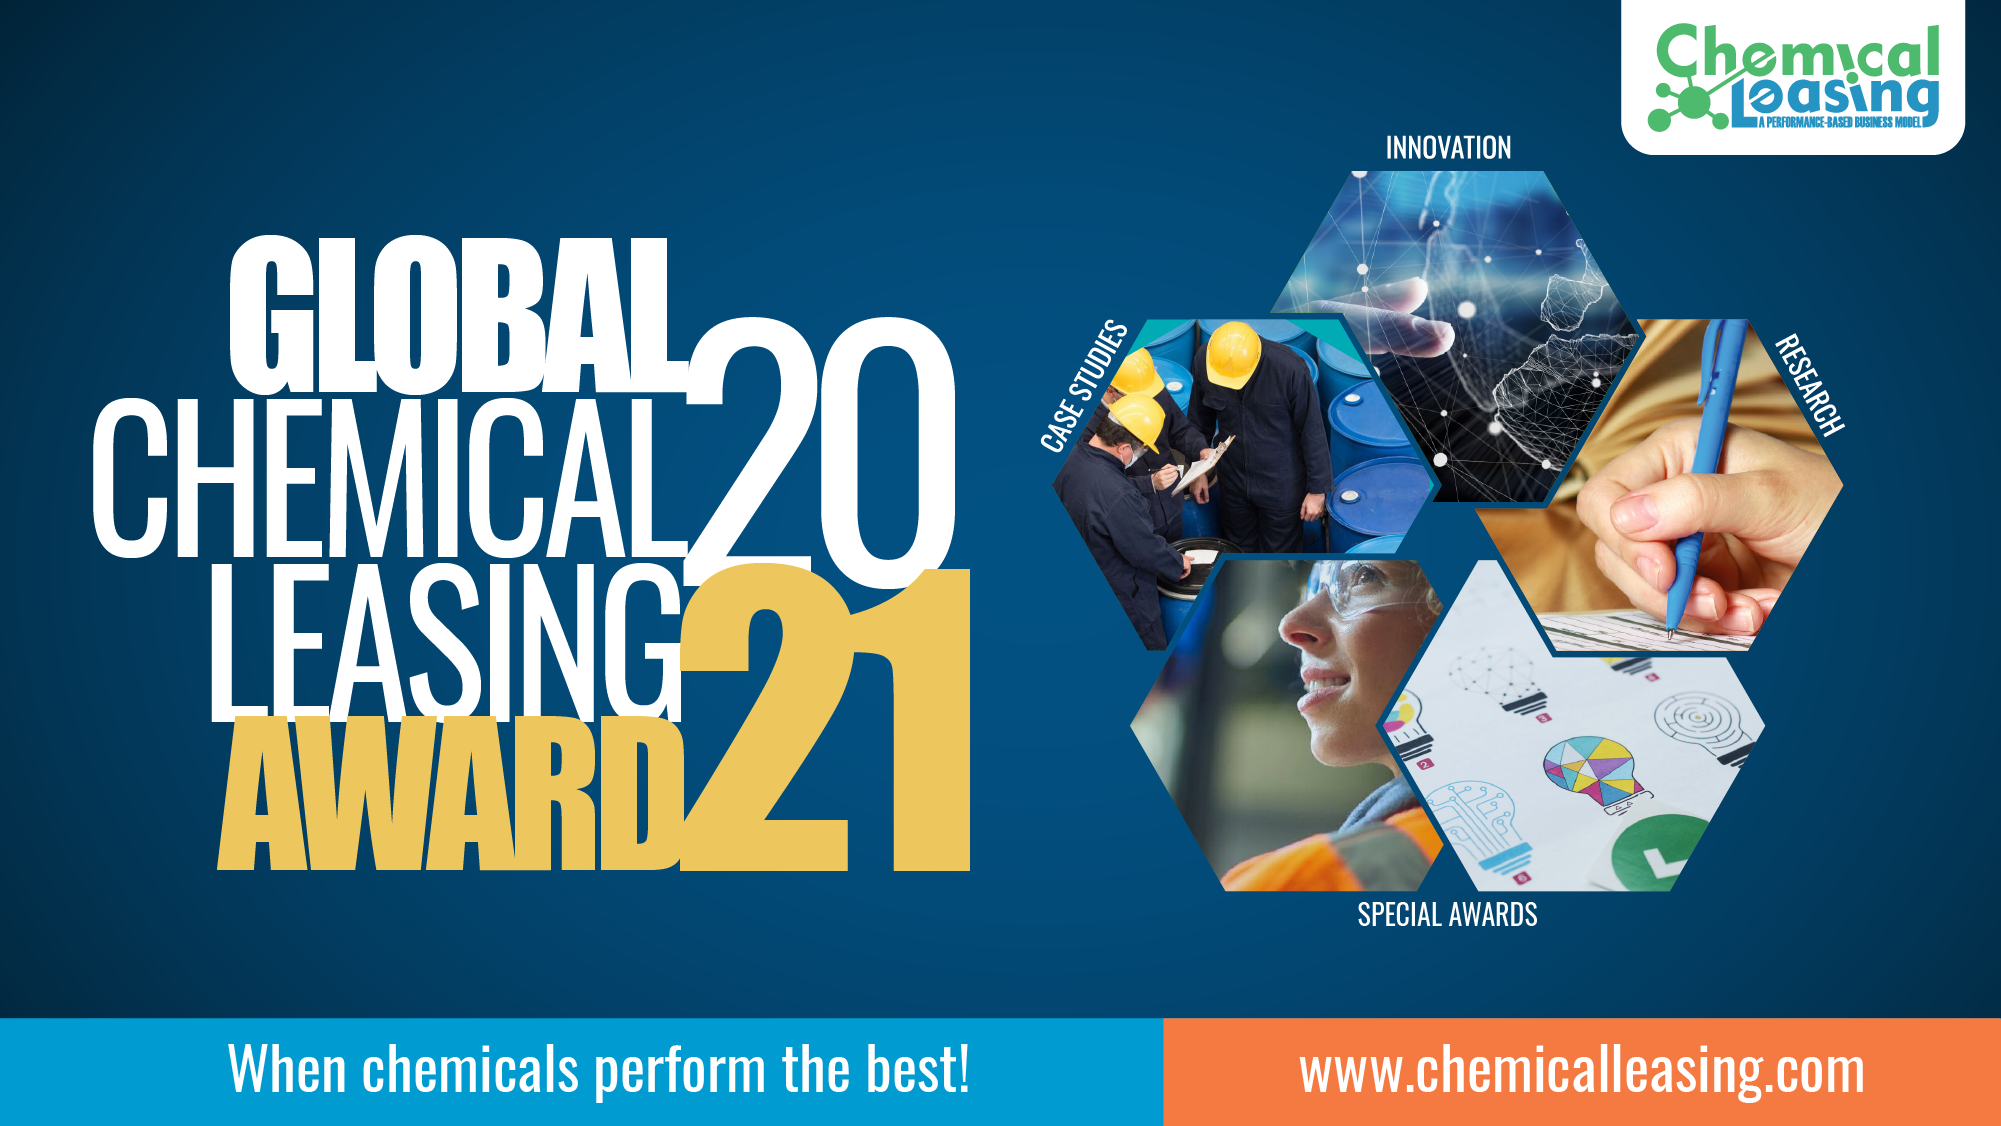 Global Chemical Leasing Award 